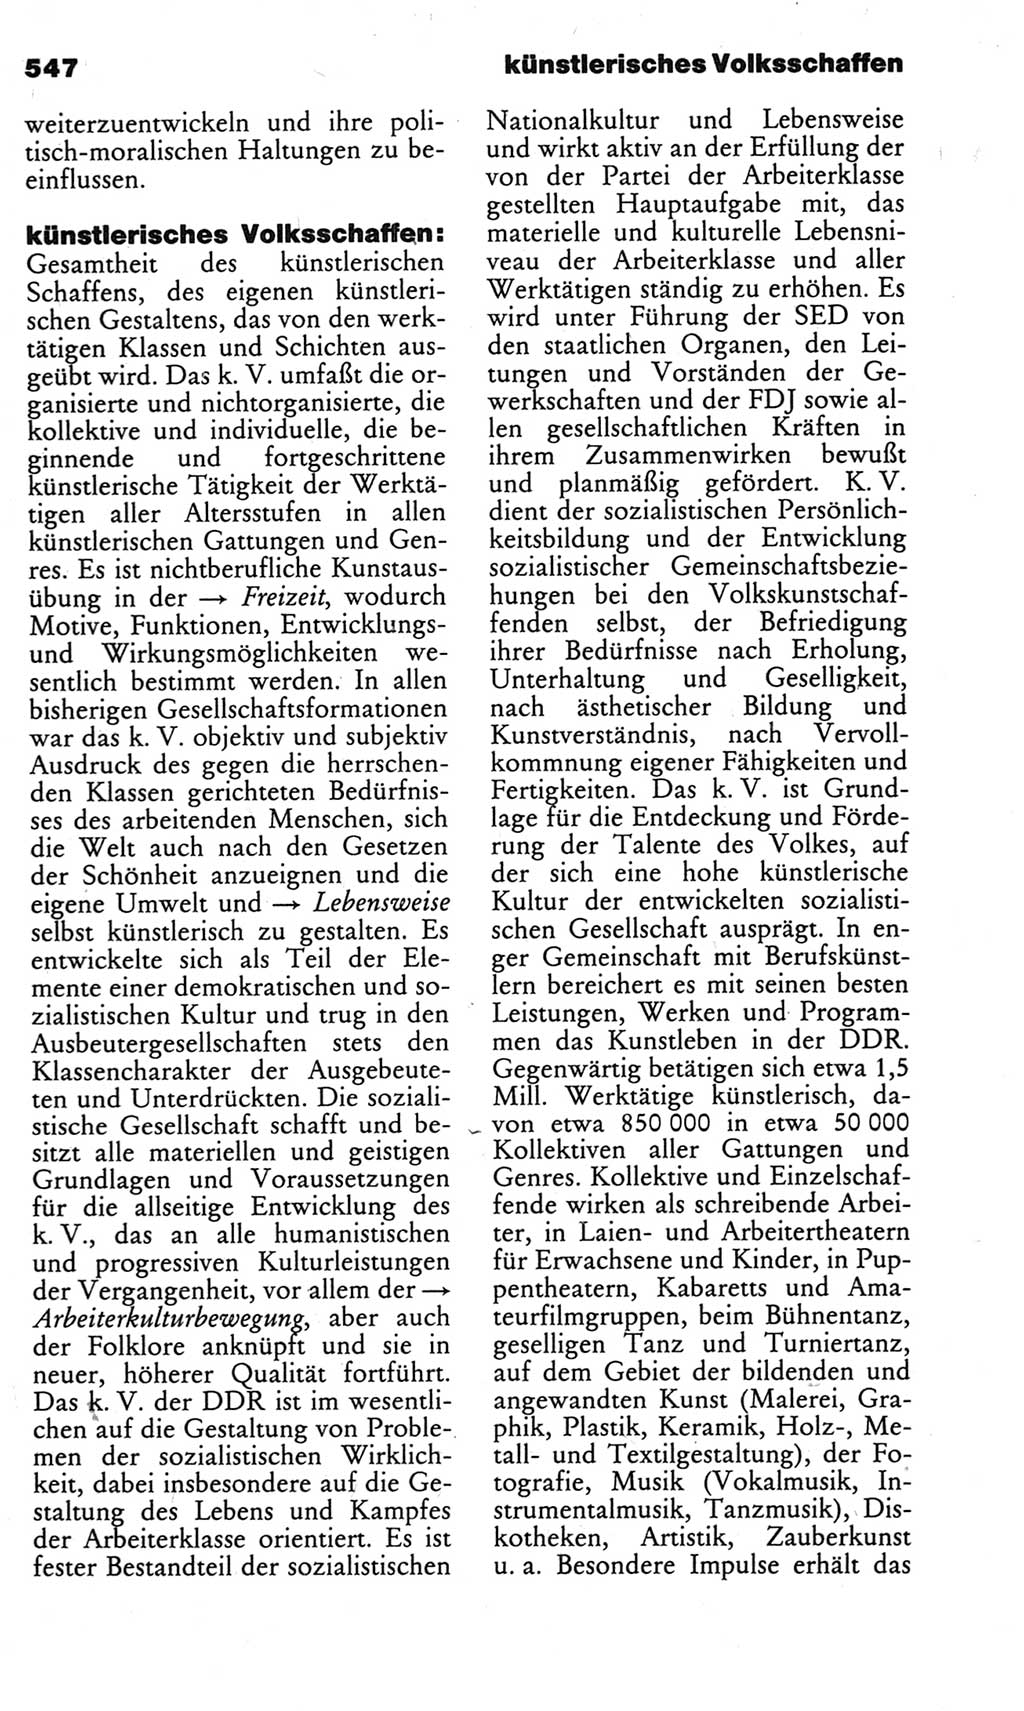 Kleines politisches Wörterbuch [Deutsche Demokratische Republik (DDR)] 1983, Seite 547 (Kl. pol. Wb. DDR 1983, S. 547)